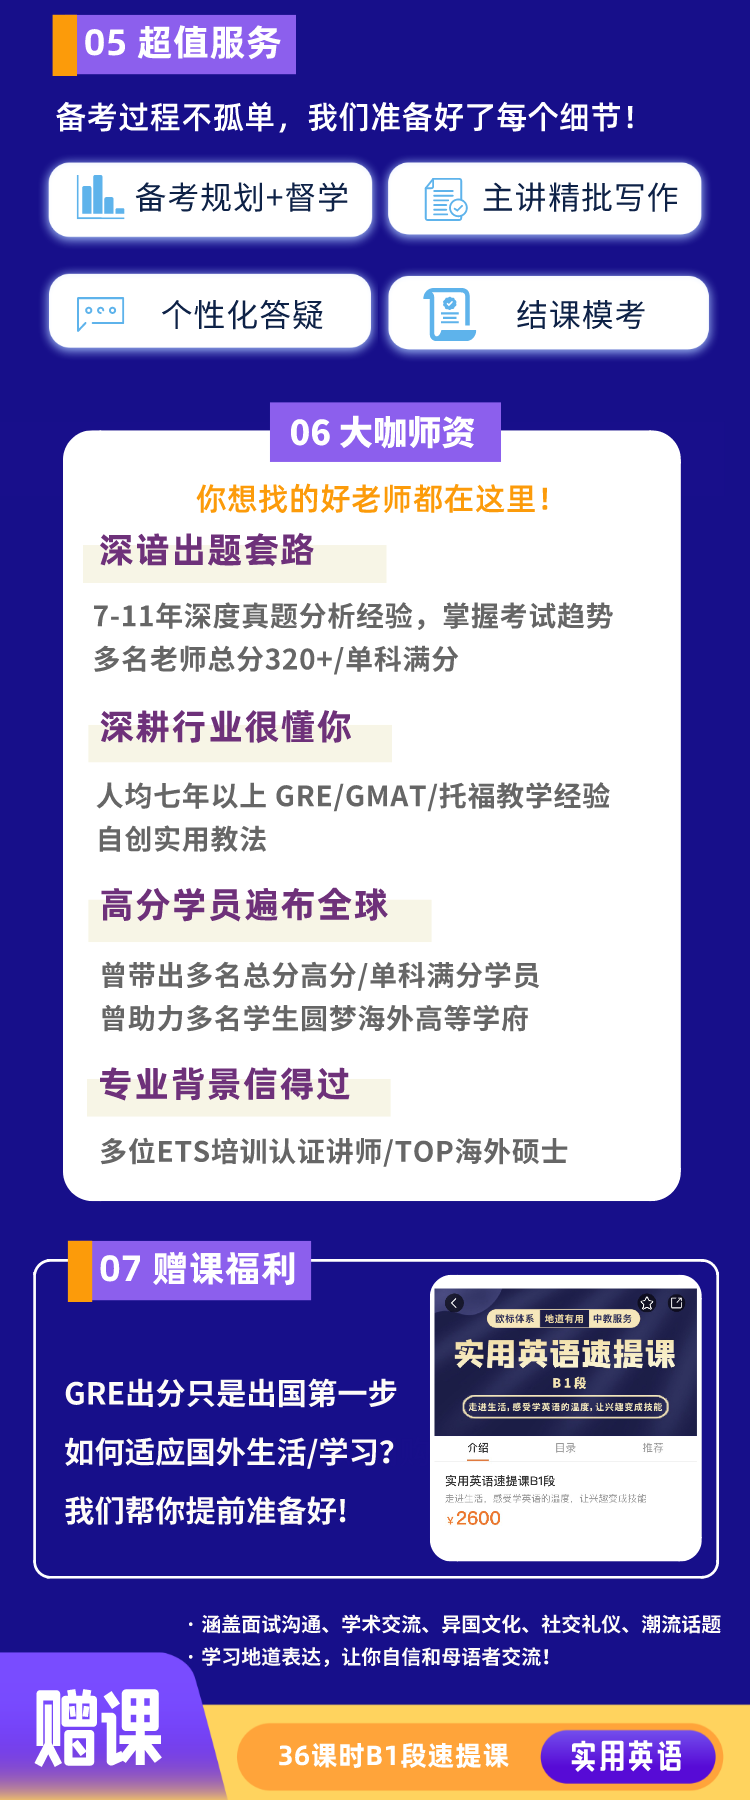 https://simg01.gaodunwangxiao.com/uploadfiles/product-center/202210/25/e3452_20221025132403.png